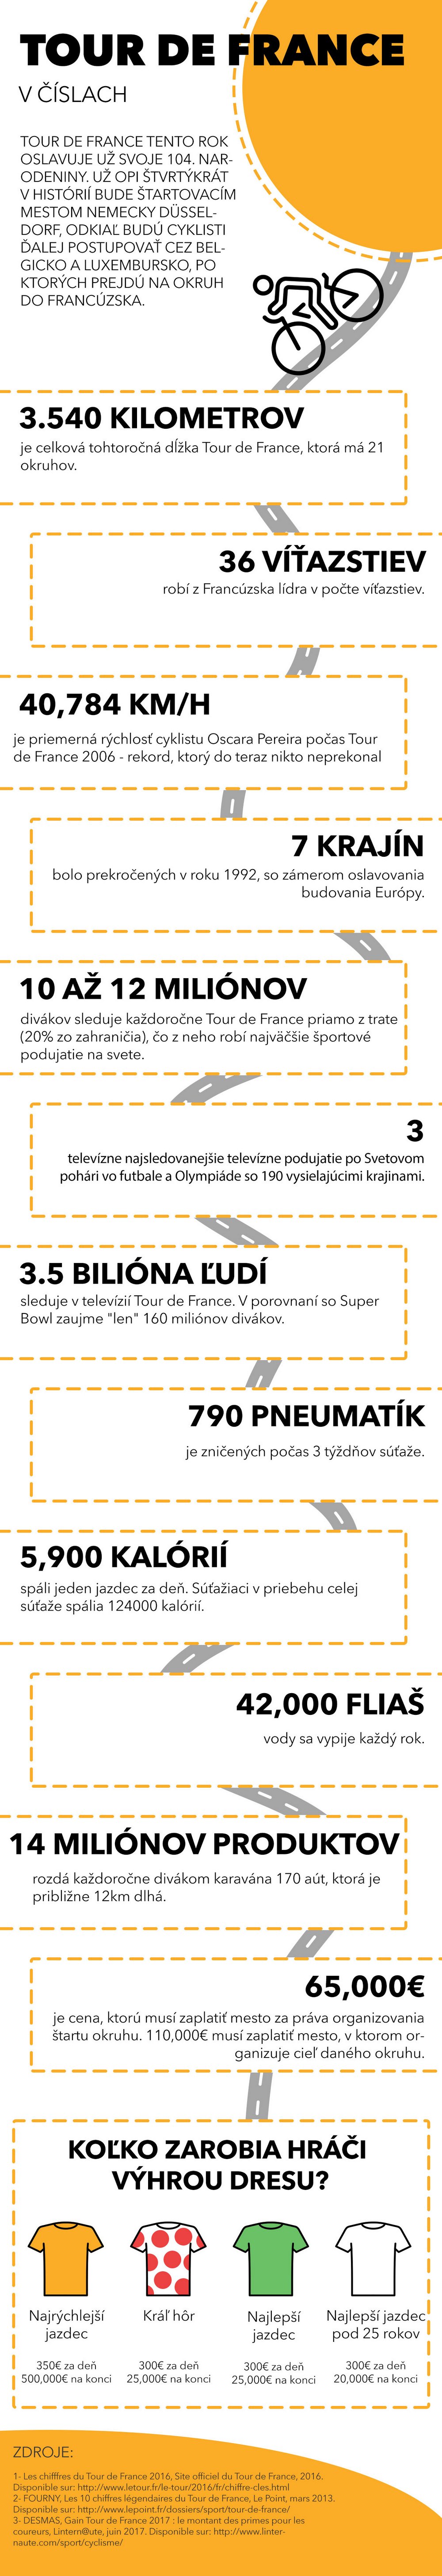 tour-de-france-infographic-sk